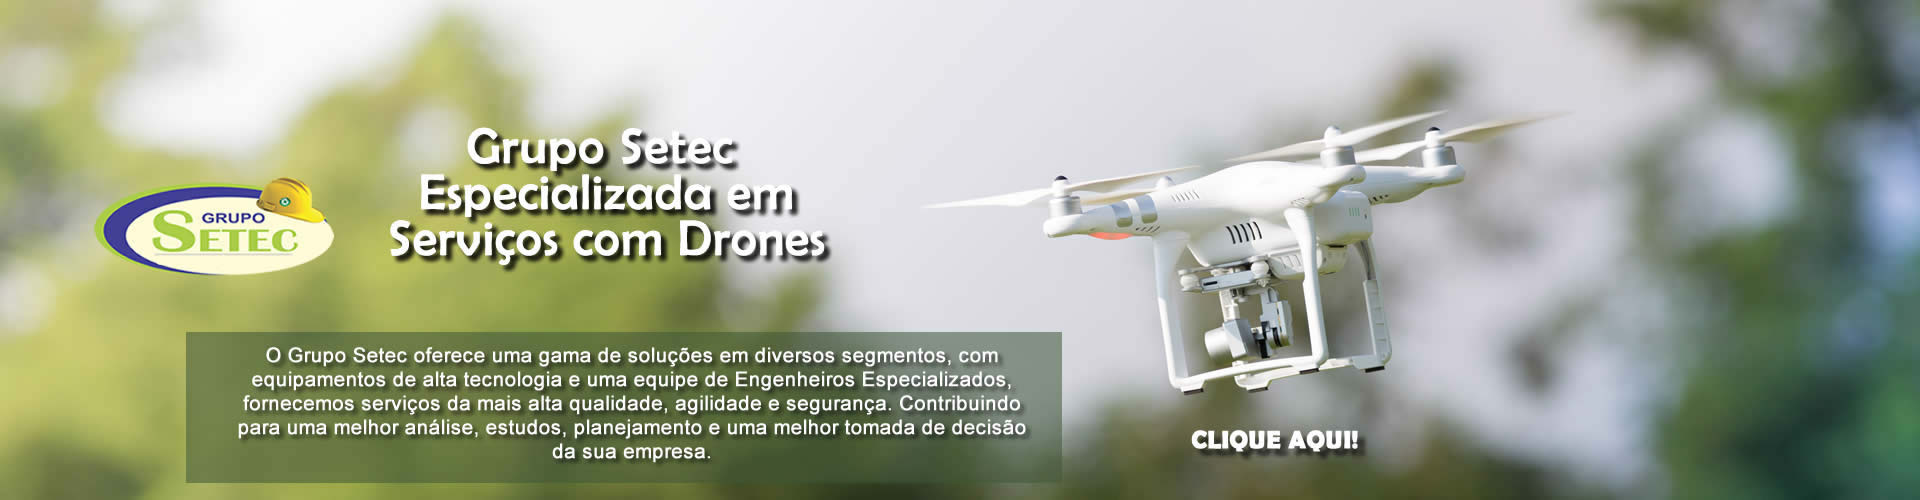 Serviços especializados com drones